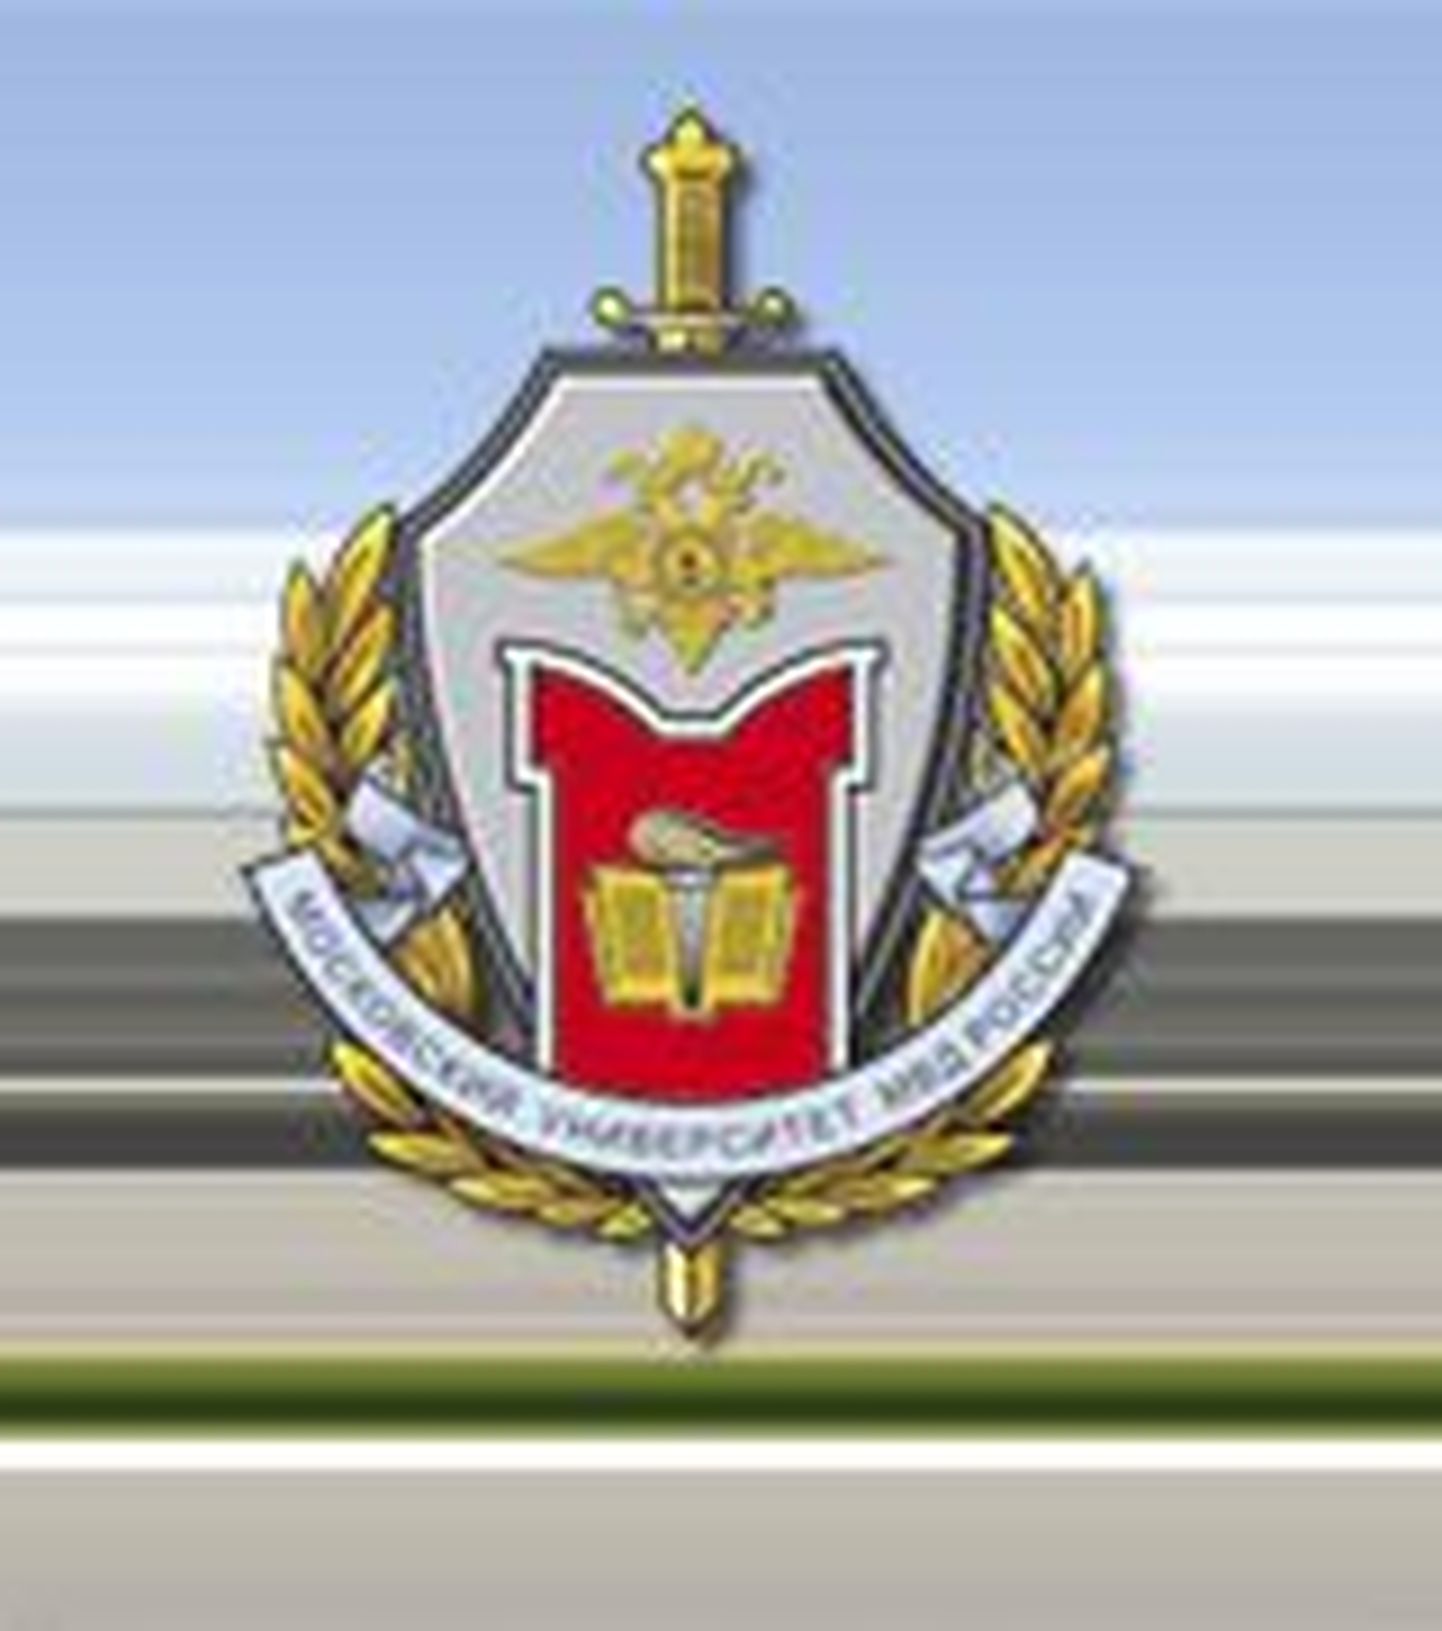 Siseministeeriumi juurde kuuluva Moskva ülikooli embleem.